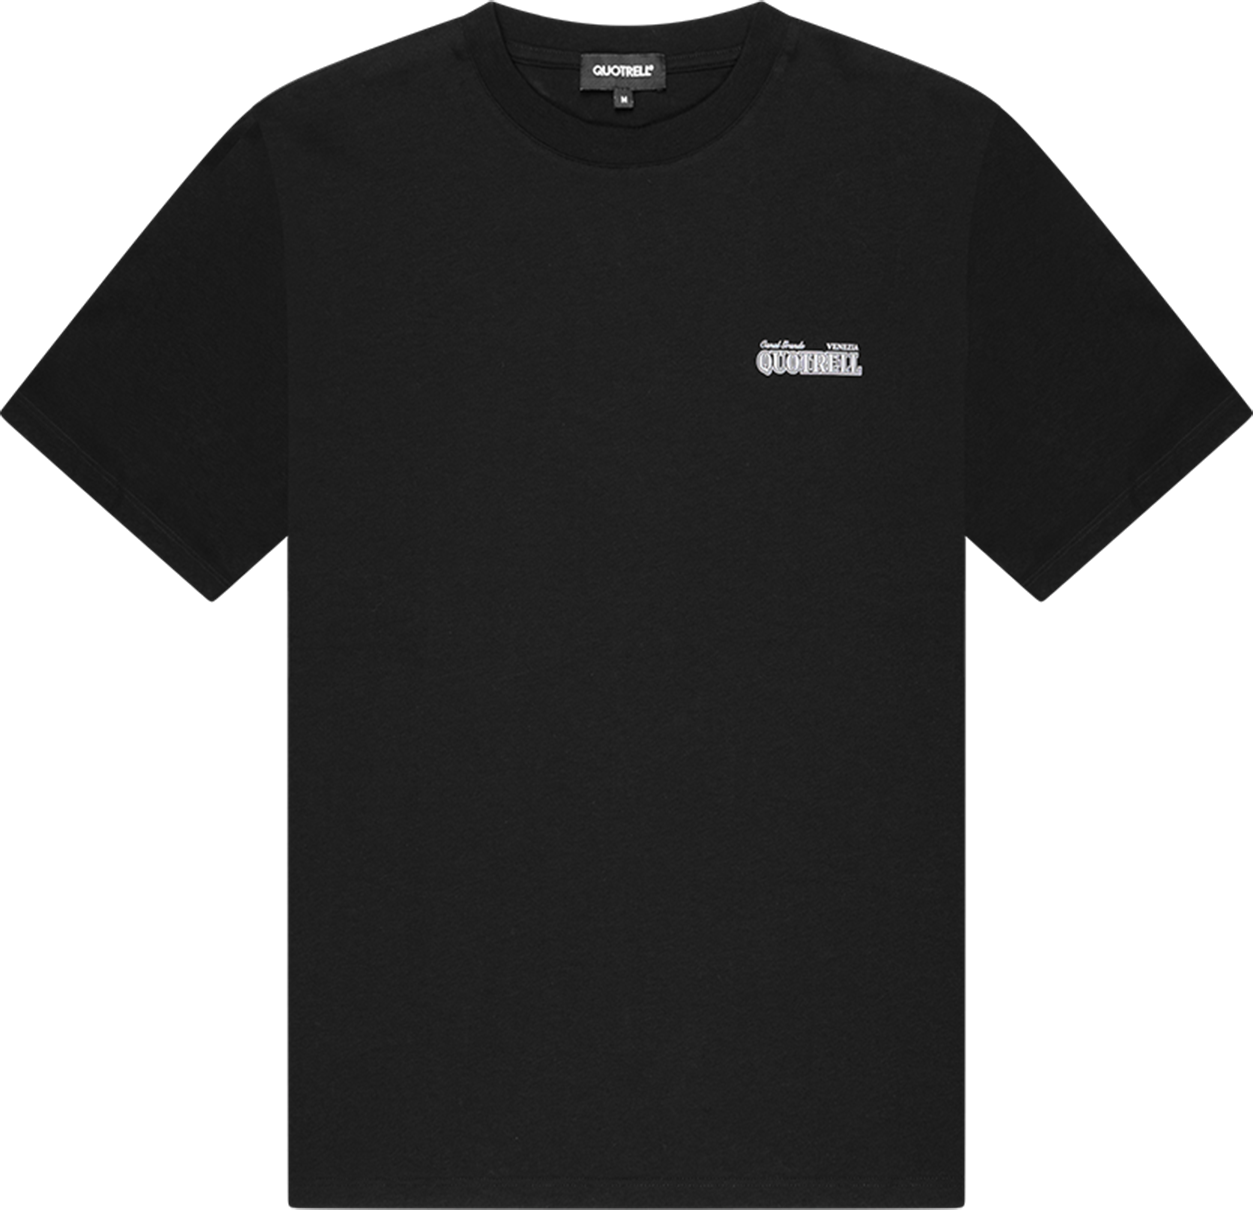 Quotrell Venezia T-shirt | Black/white Zwart